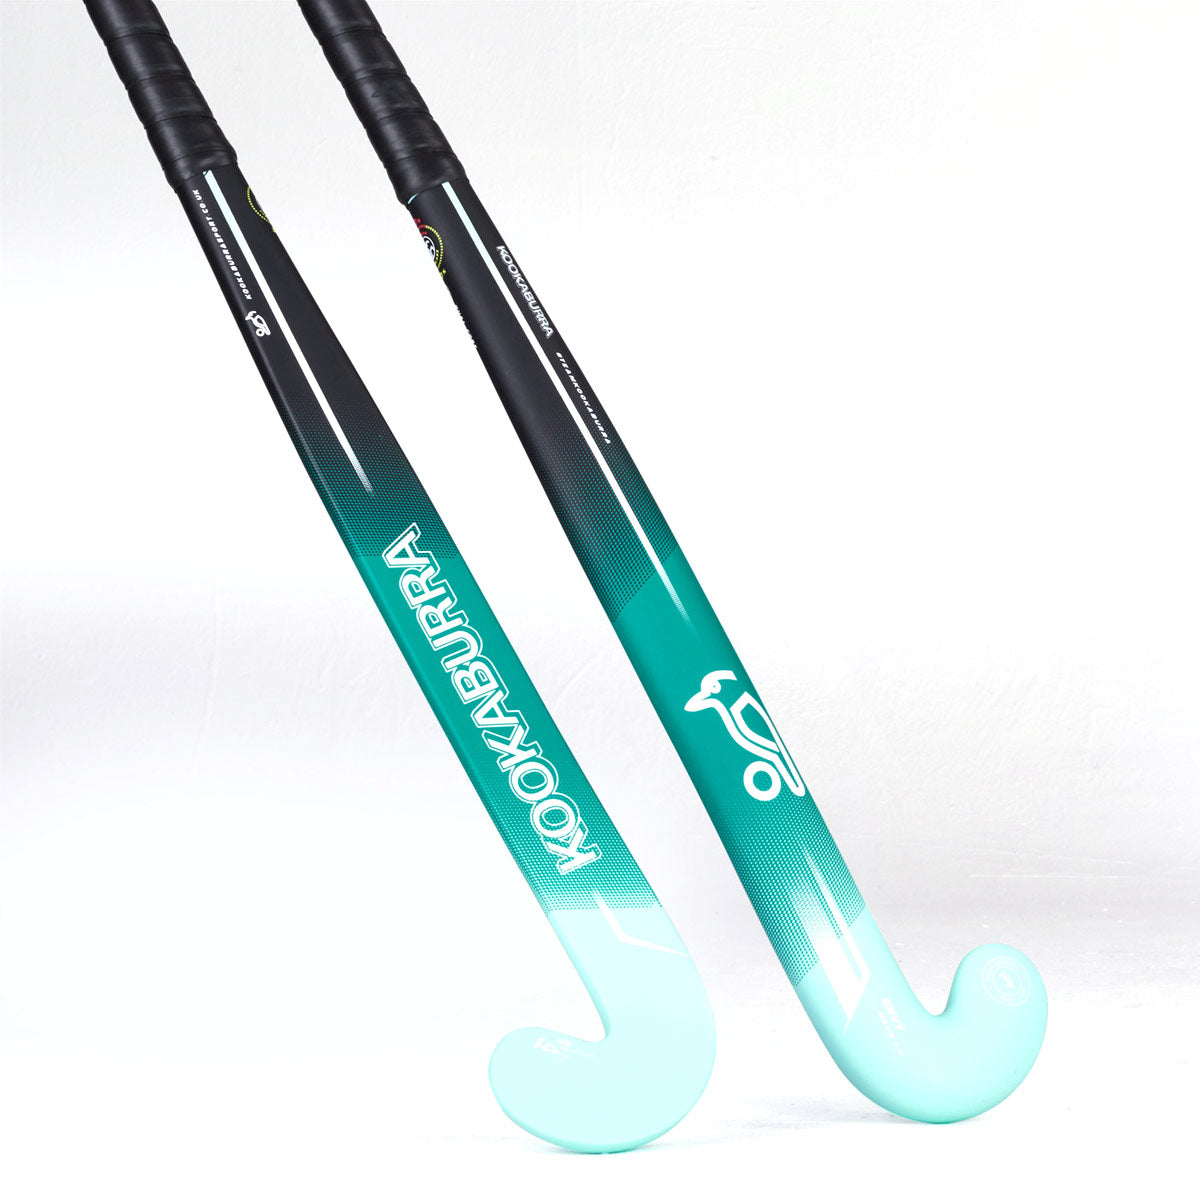 Kookaburra Envy M-Bow 1.0 Hockey Stick